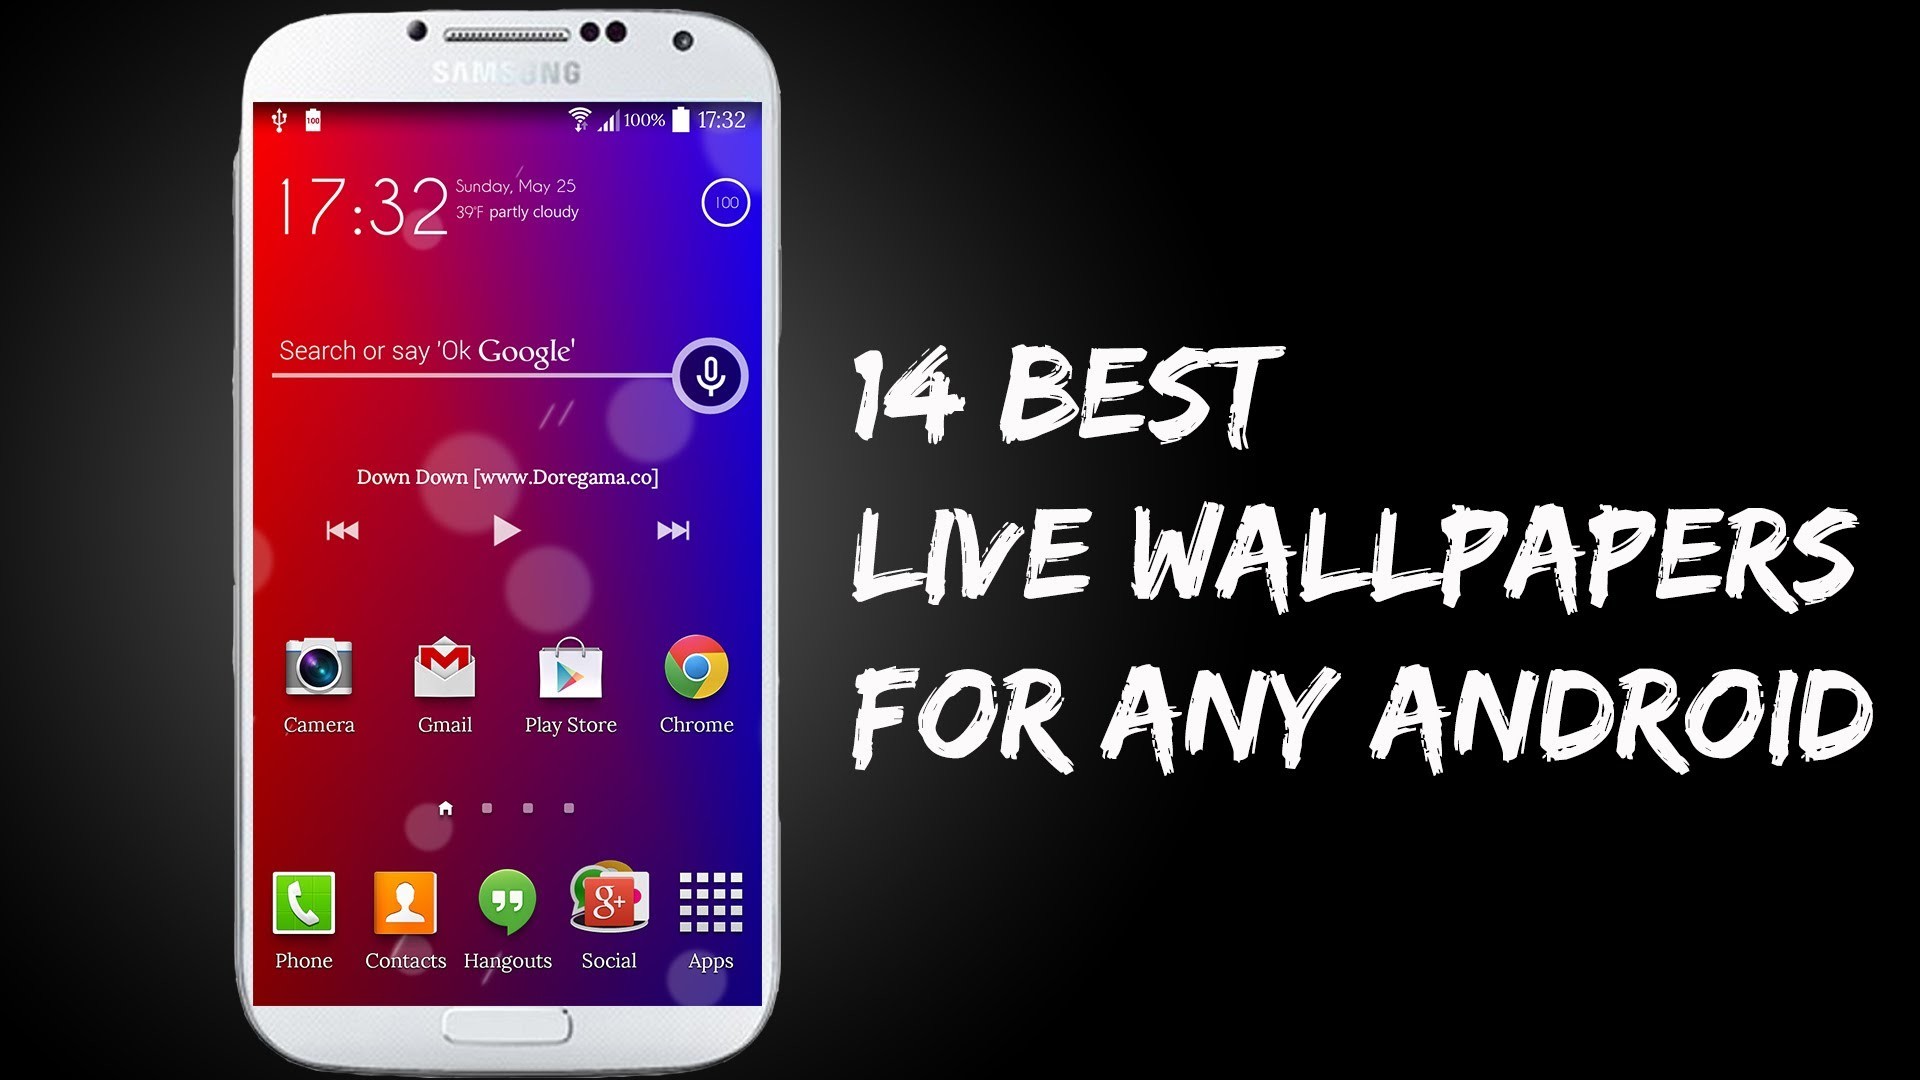 samsung galaxy s5 live wallpaper,cellulare,aggeggio,smartphone,dispositivo di comunicazione,dispositivo di comunicazione portatile